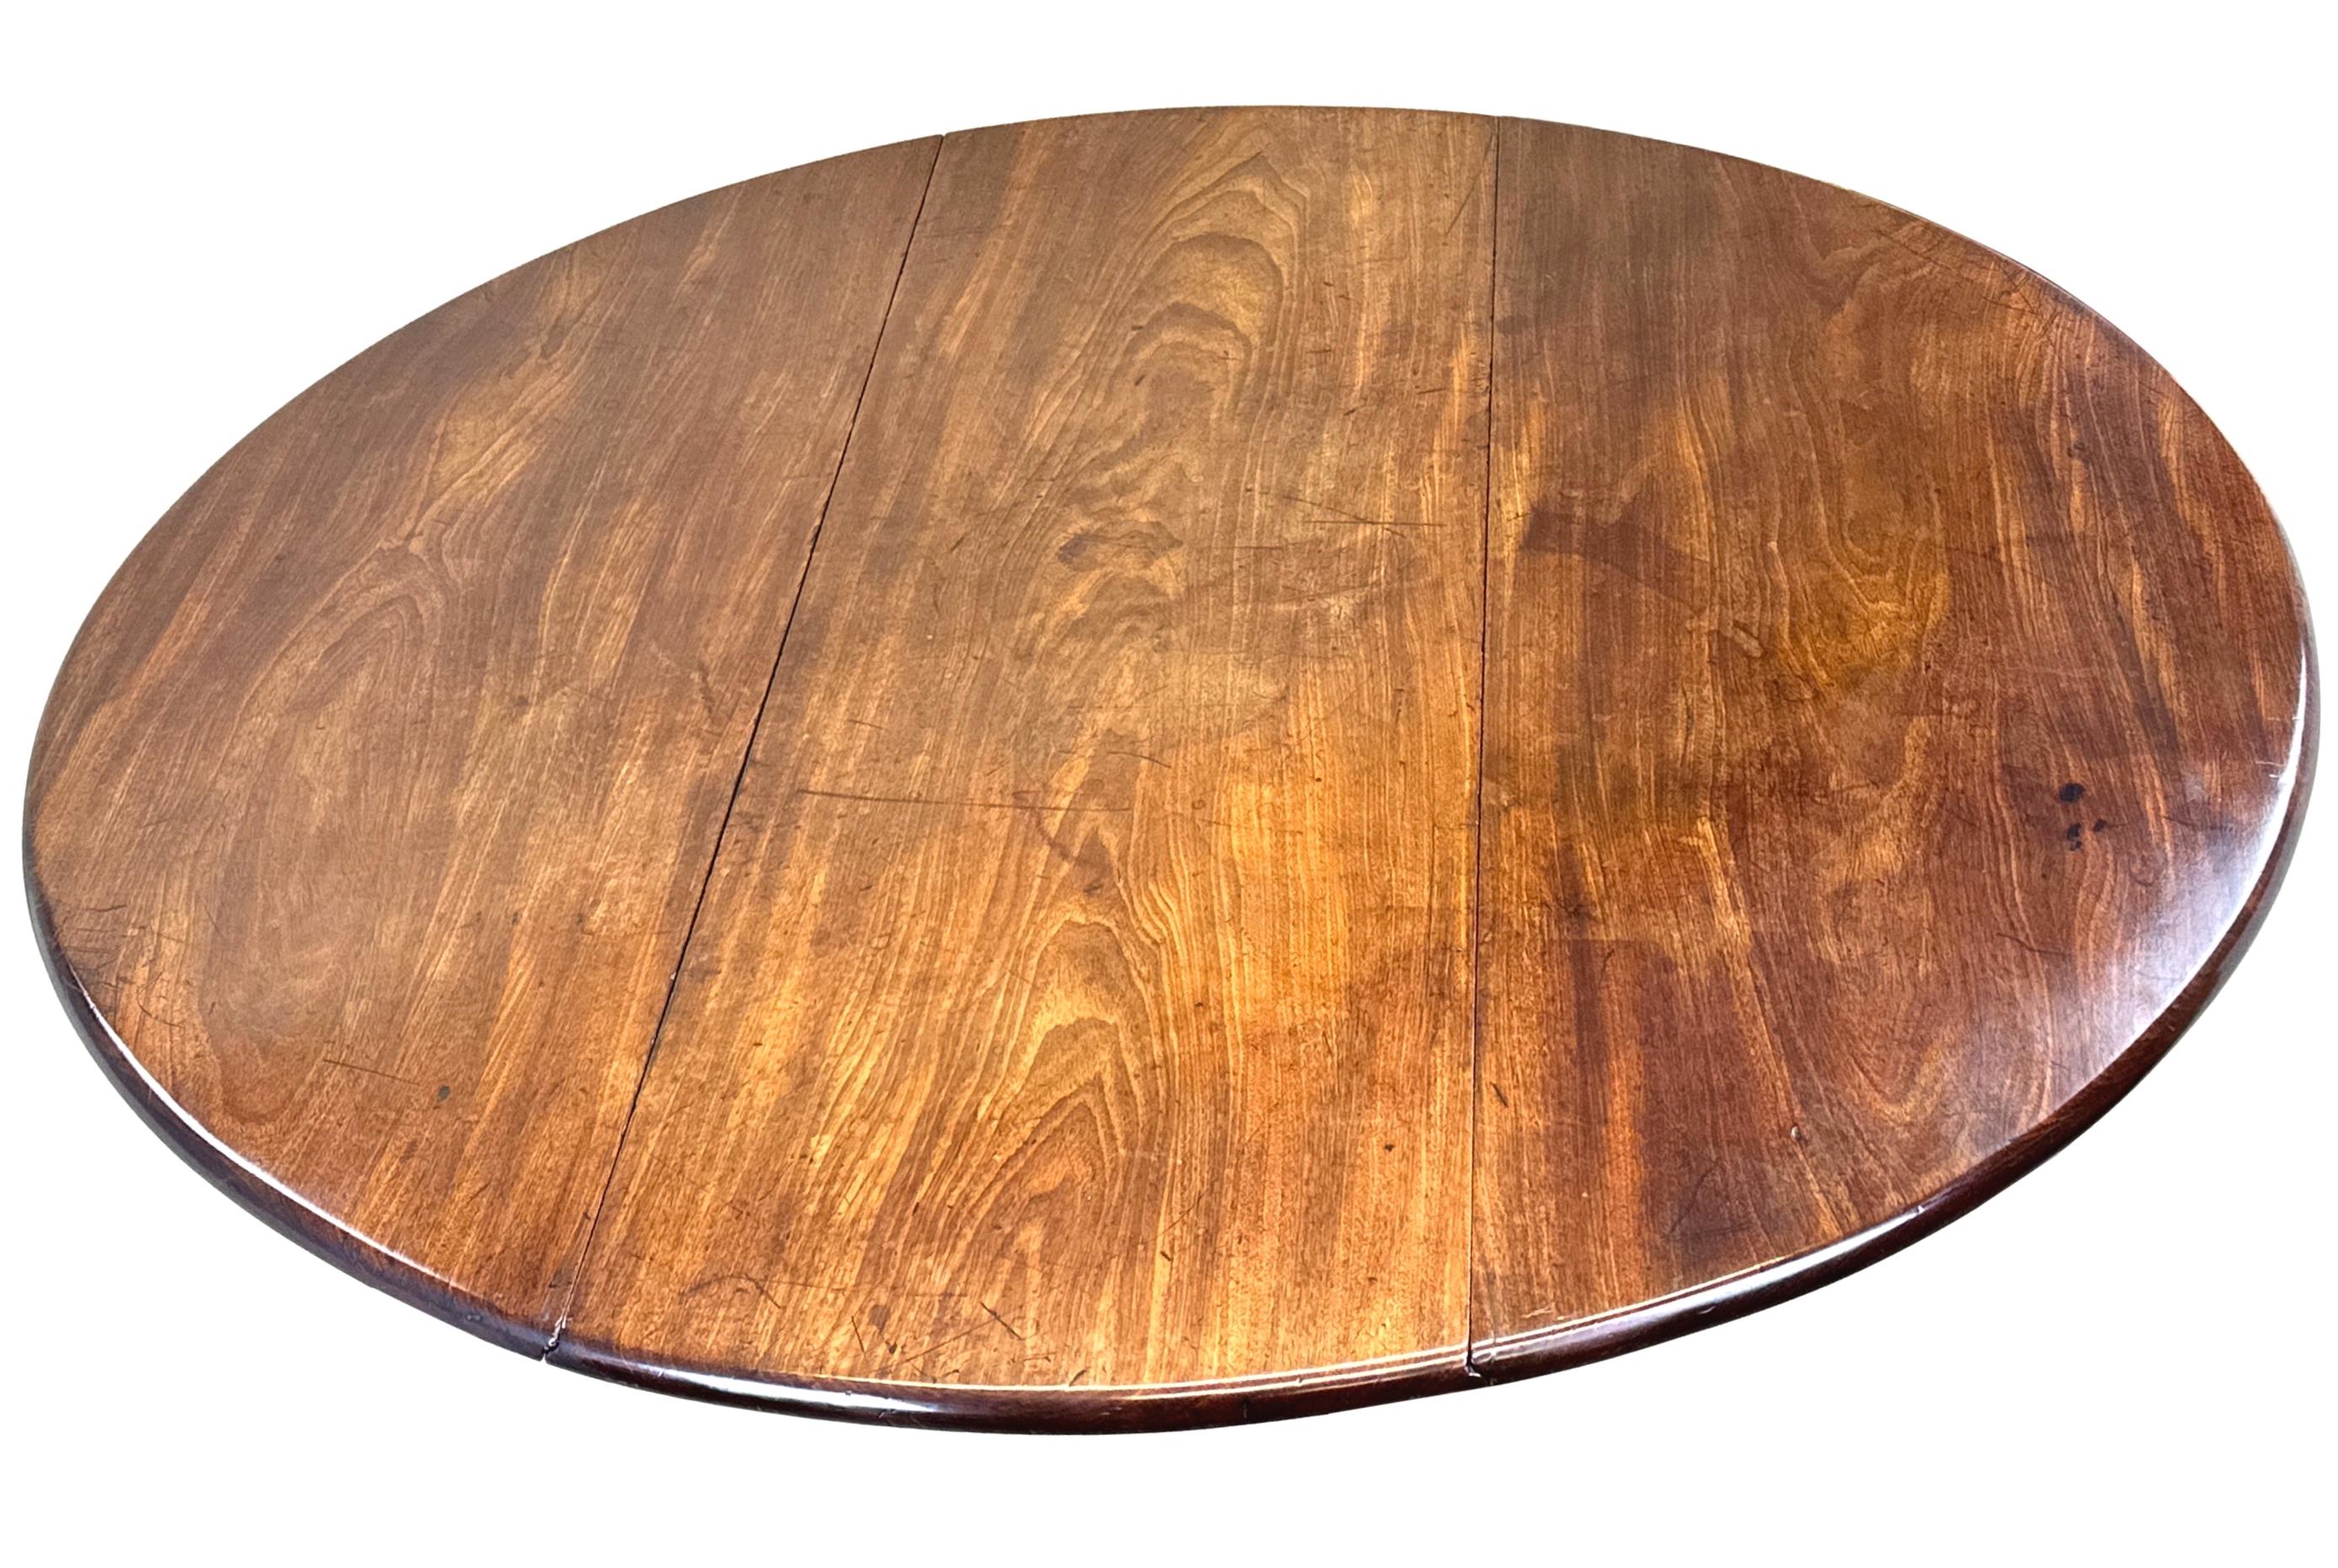 Table de salle à manger ovale à abattant de très bonne qualité, d'époque George II, milieu du XVIIIe siècle, pouvant accueillir 8 personnes, avec un plateau à deux abattants extrêmement bien figuré conservant une couleur et une patine